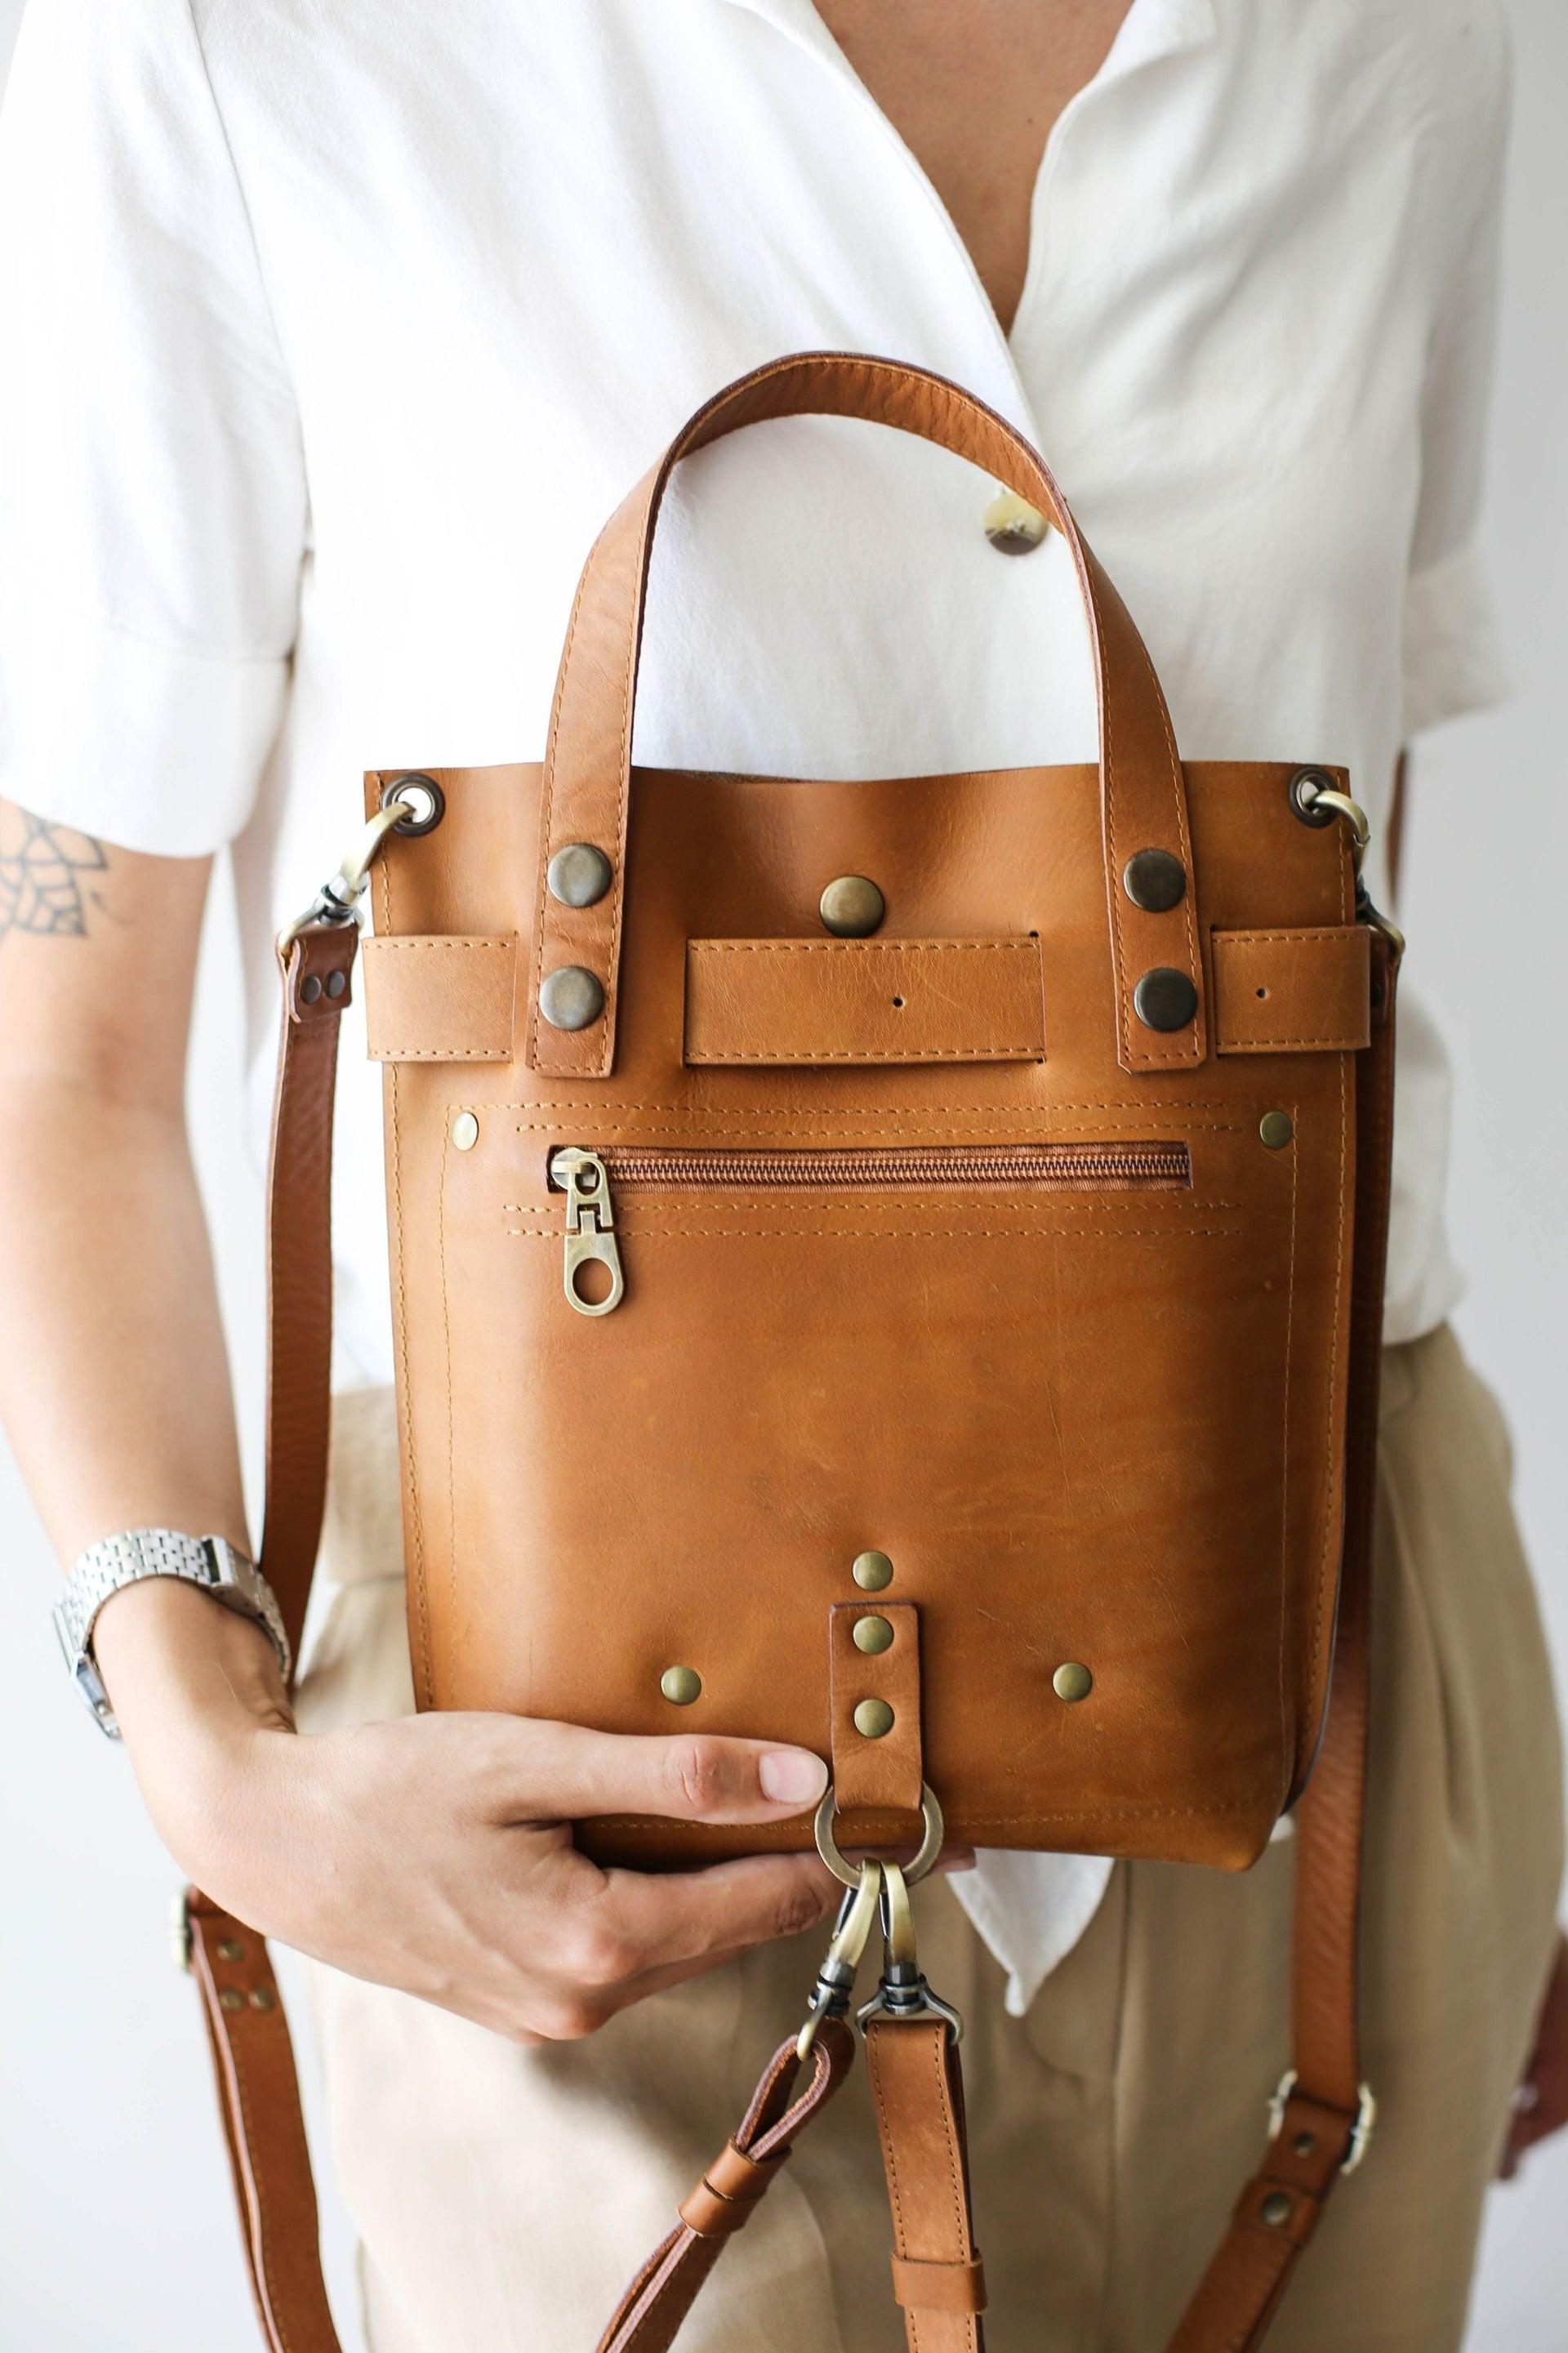 leather backpack purse designer